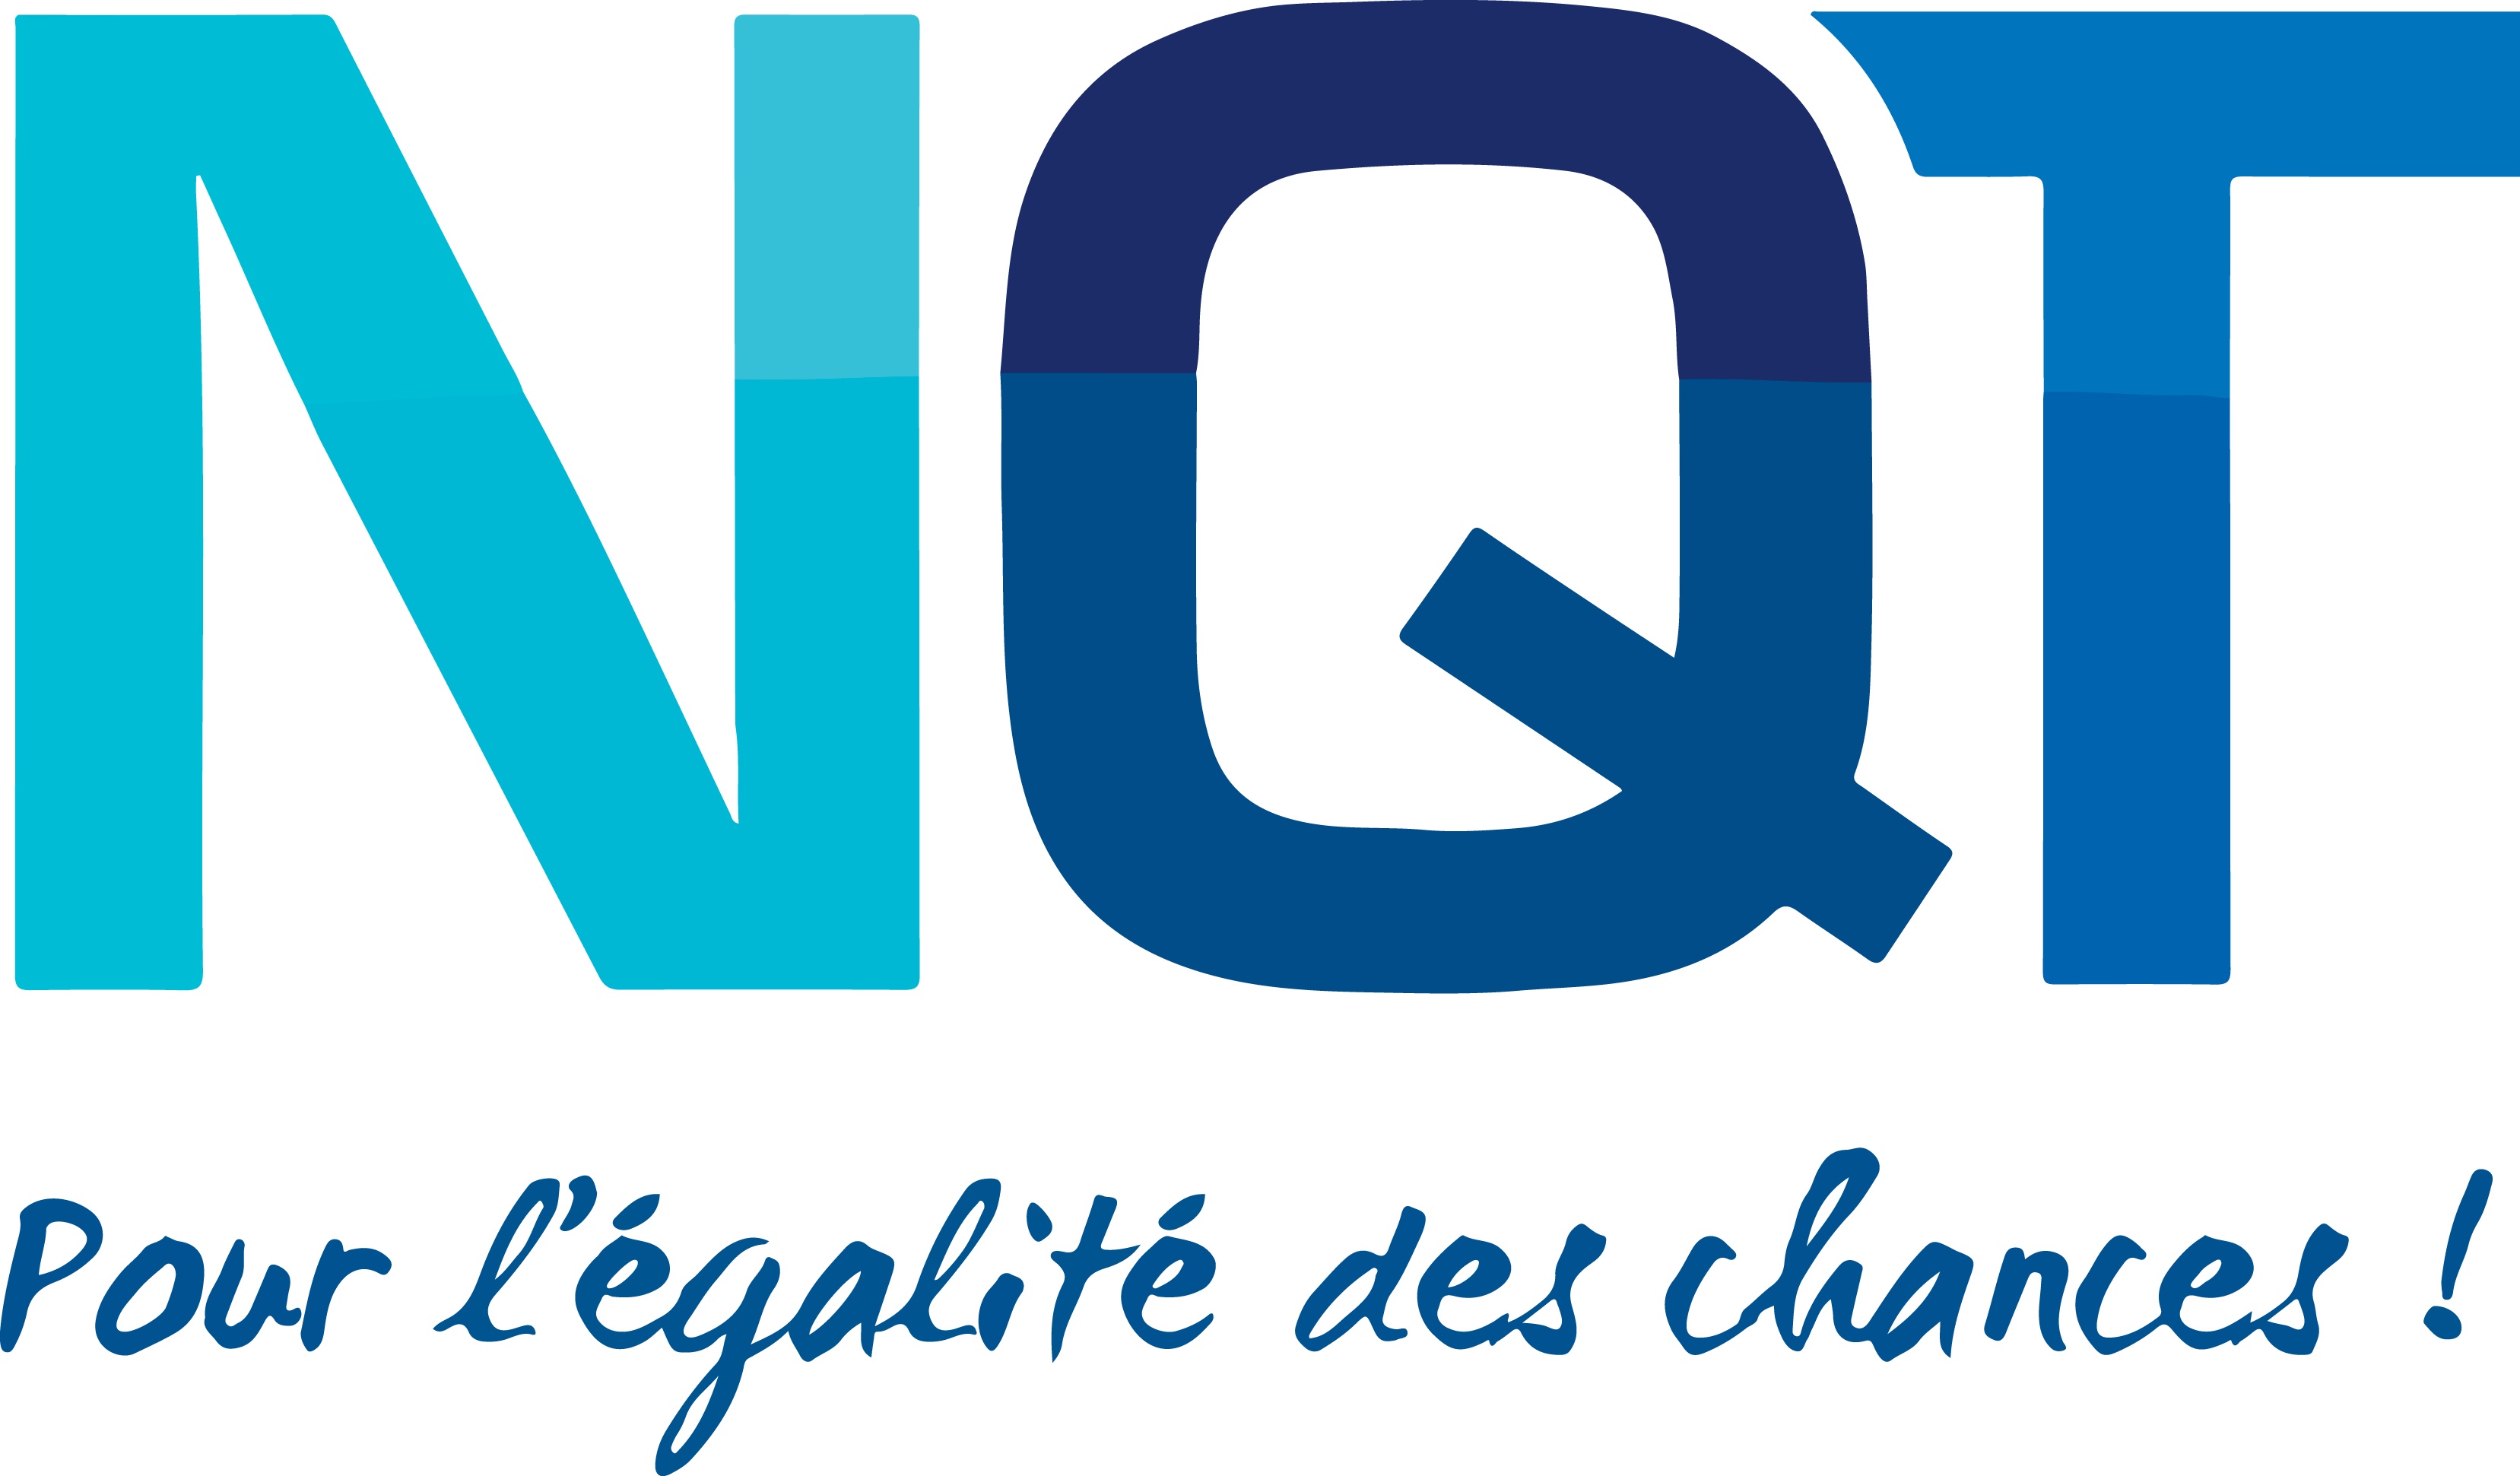 NQT - Pour l'égalité des chances !